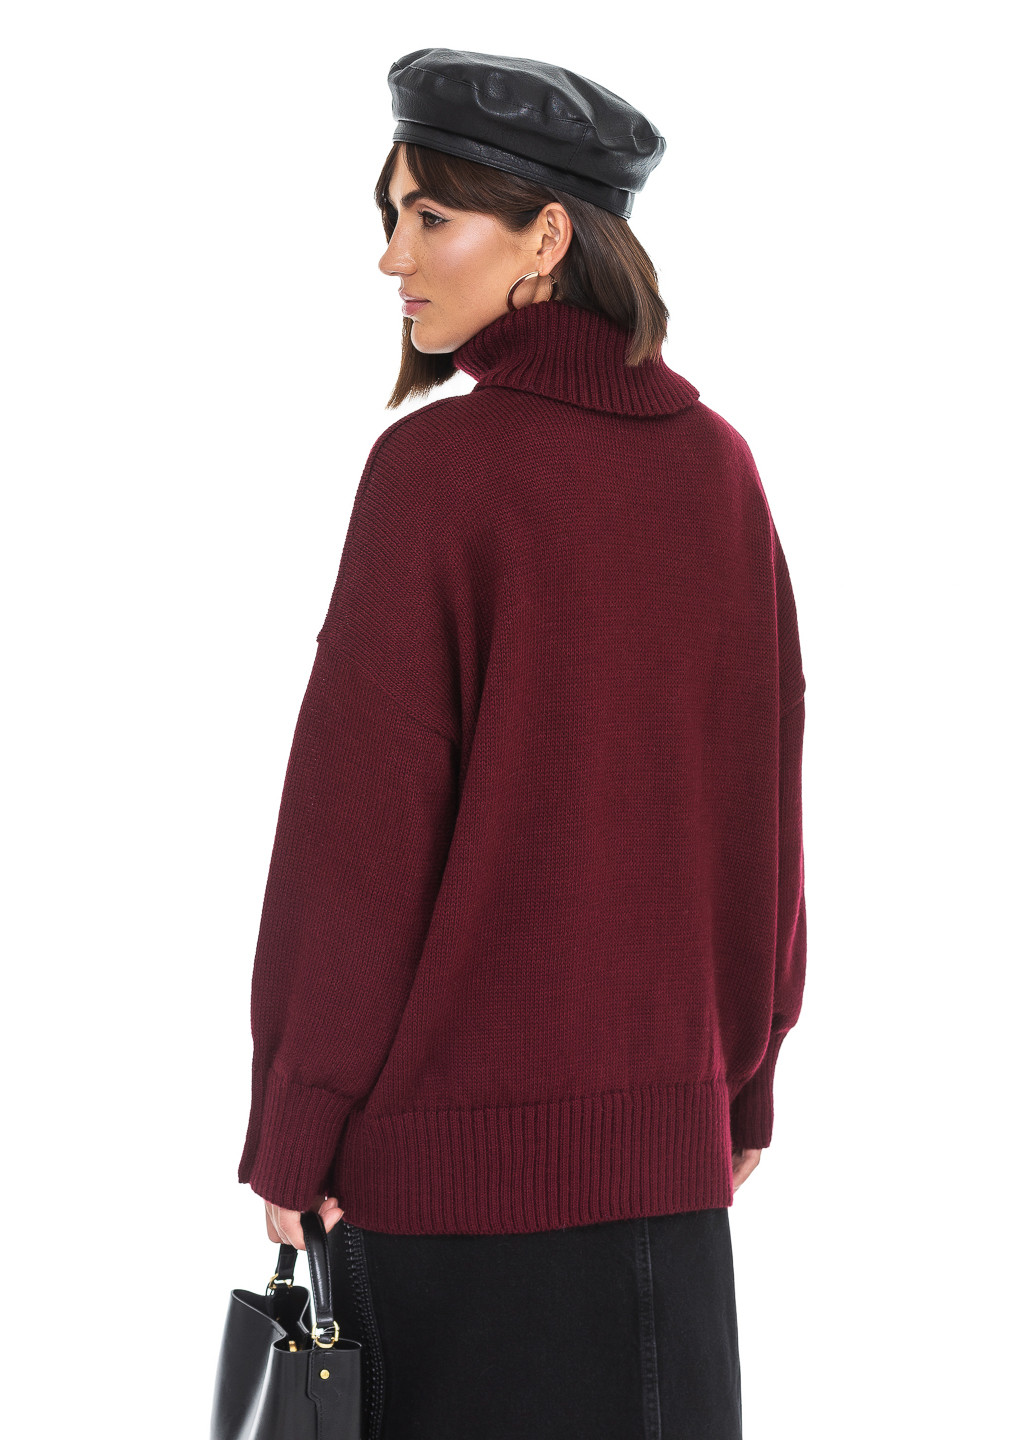 Бордовый свободный женский свитер SVTR